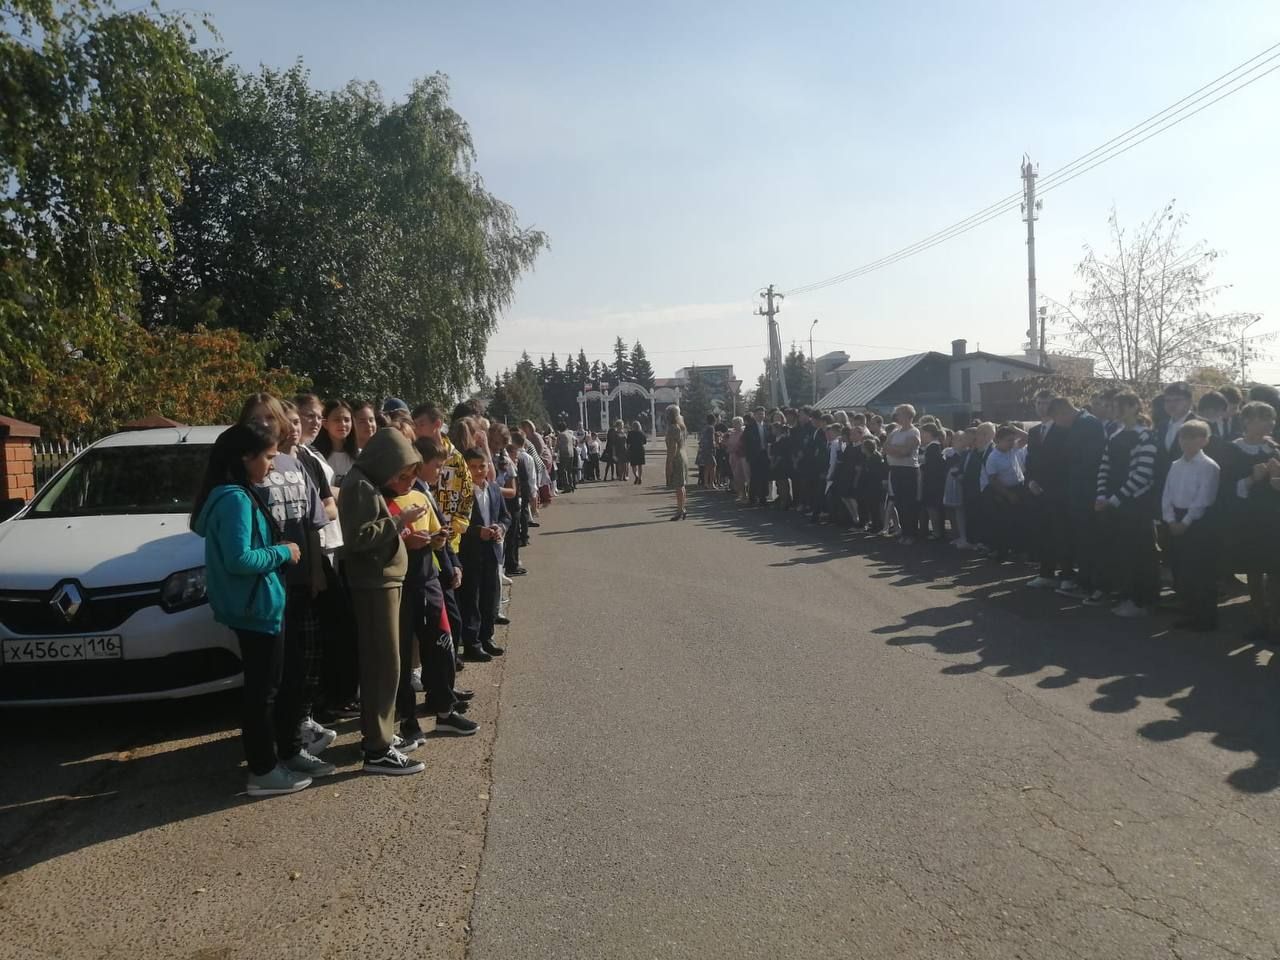 В учебных целях проведена эвакуация в средней школе № 2 г. Лаишево